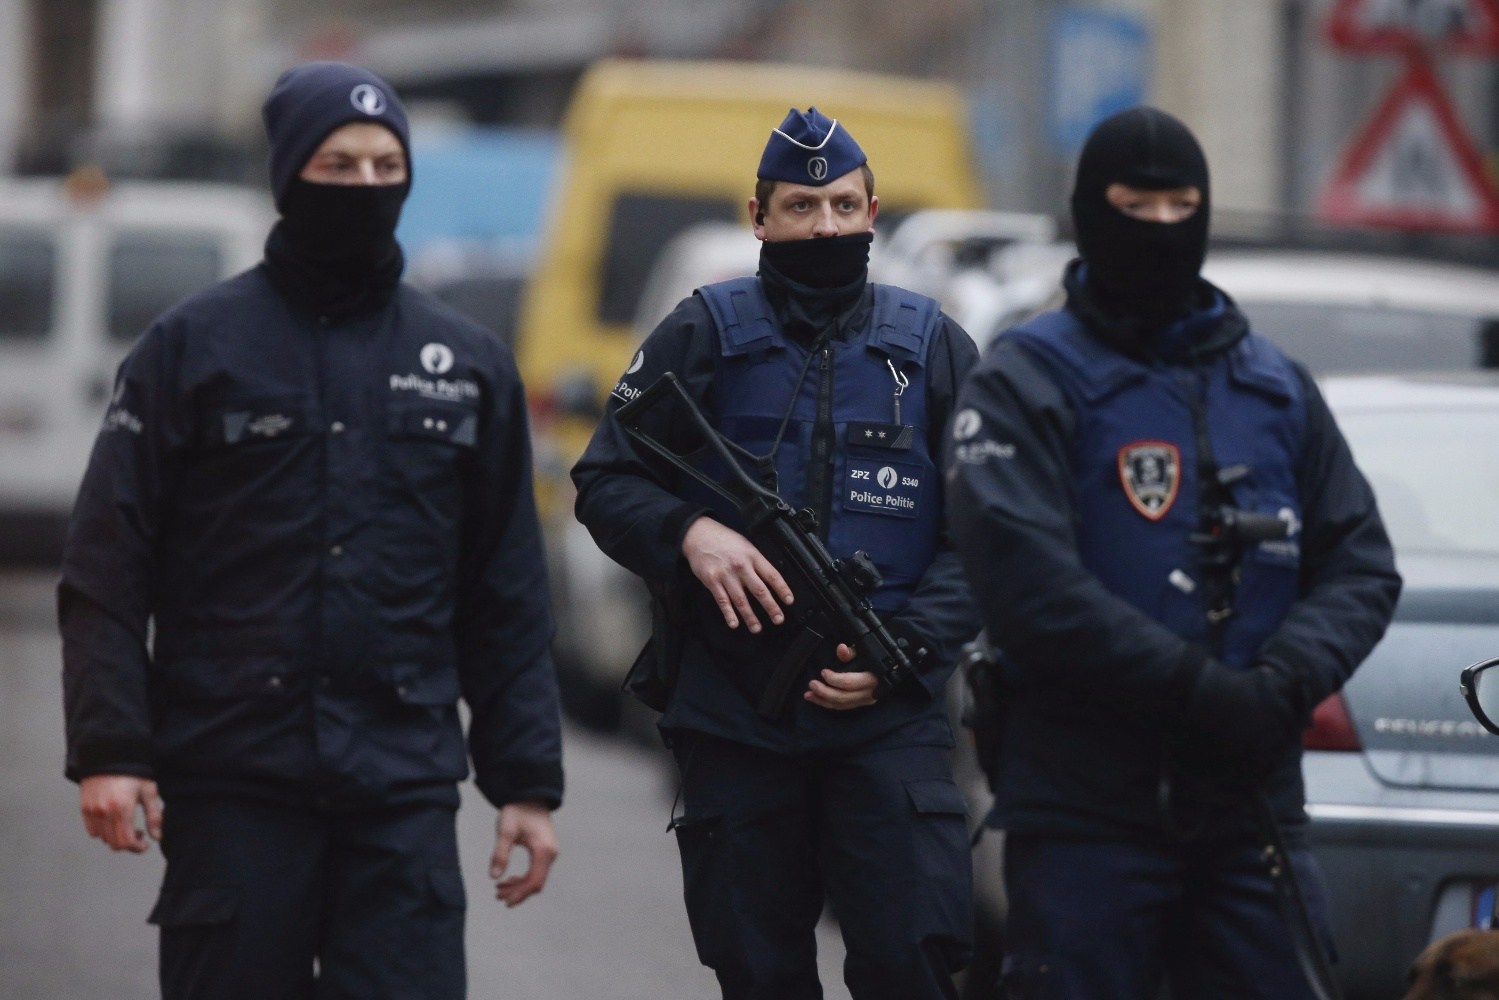 Europa intensifica seguridad tras ataques de Bruselas